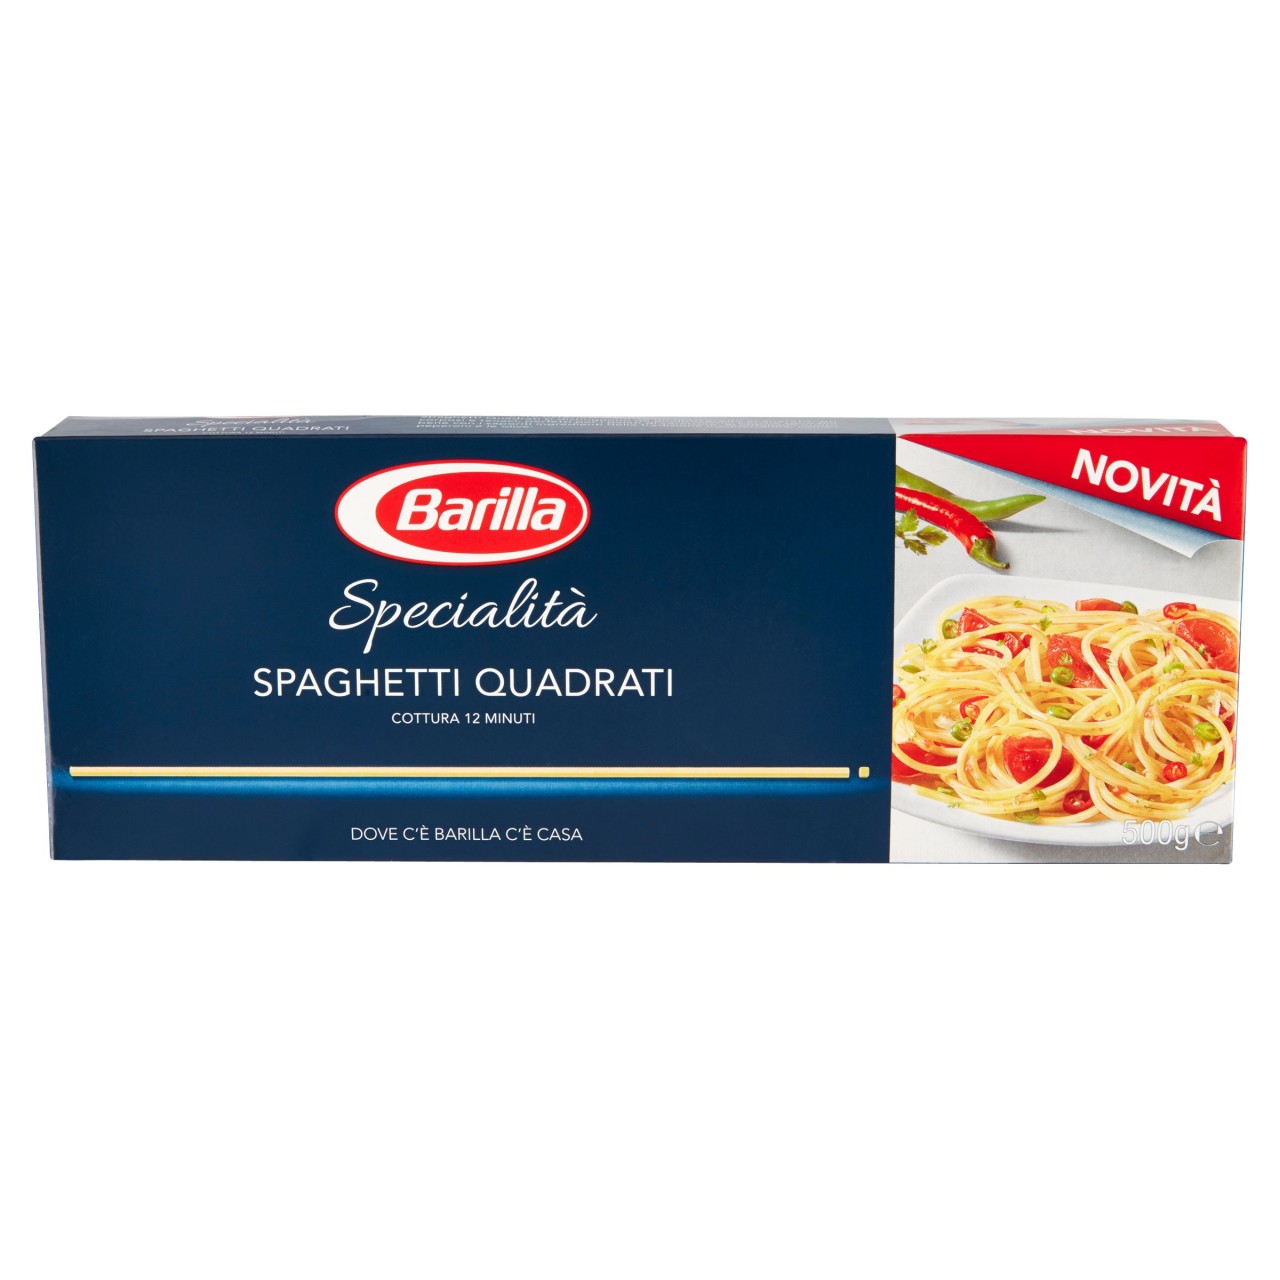 Spaghetti quadrati Barilla specialità gr. 500